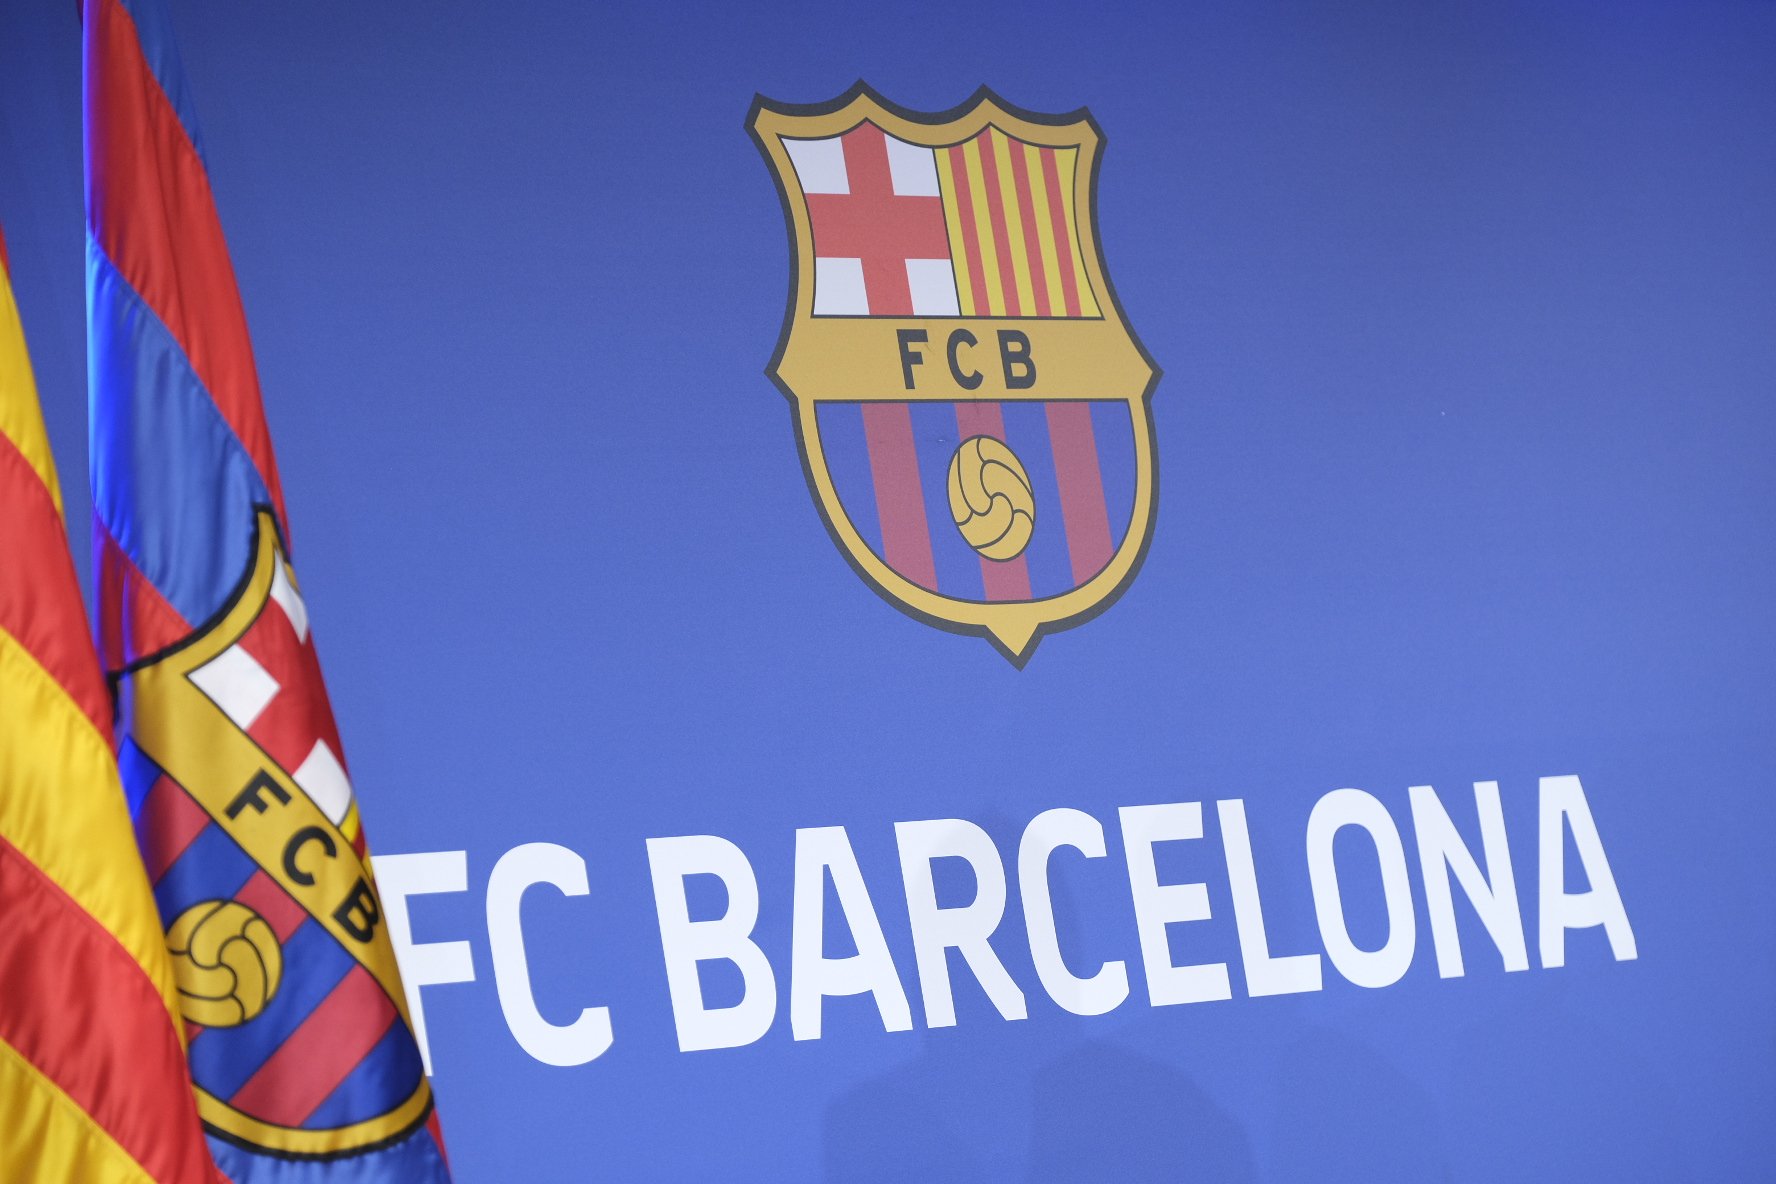 Les claus del cas Negreira: quins interessos i acusacions hi ha contra el Barça?